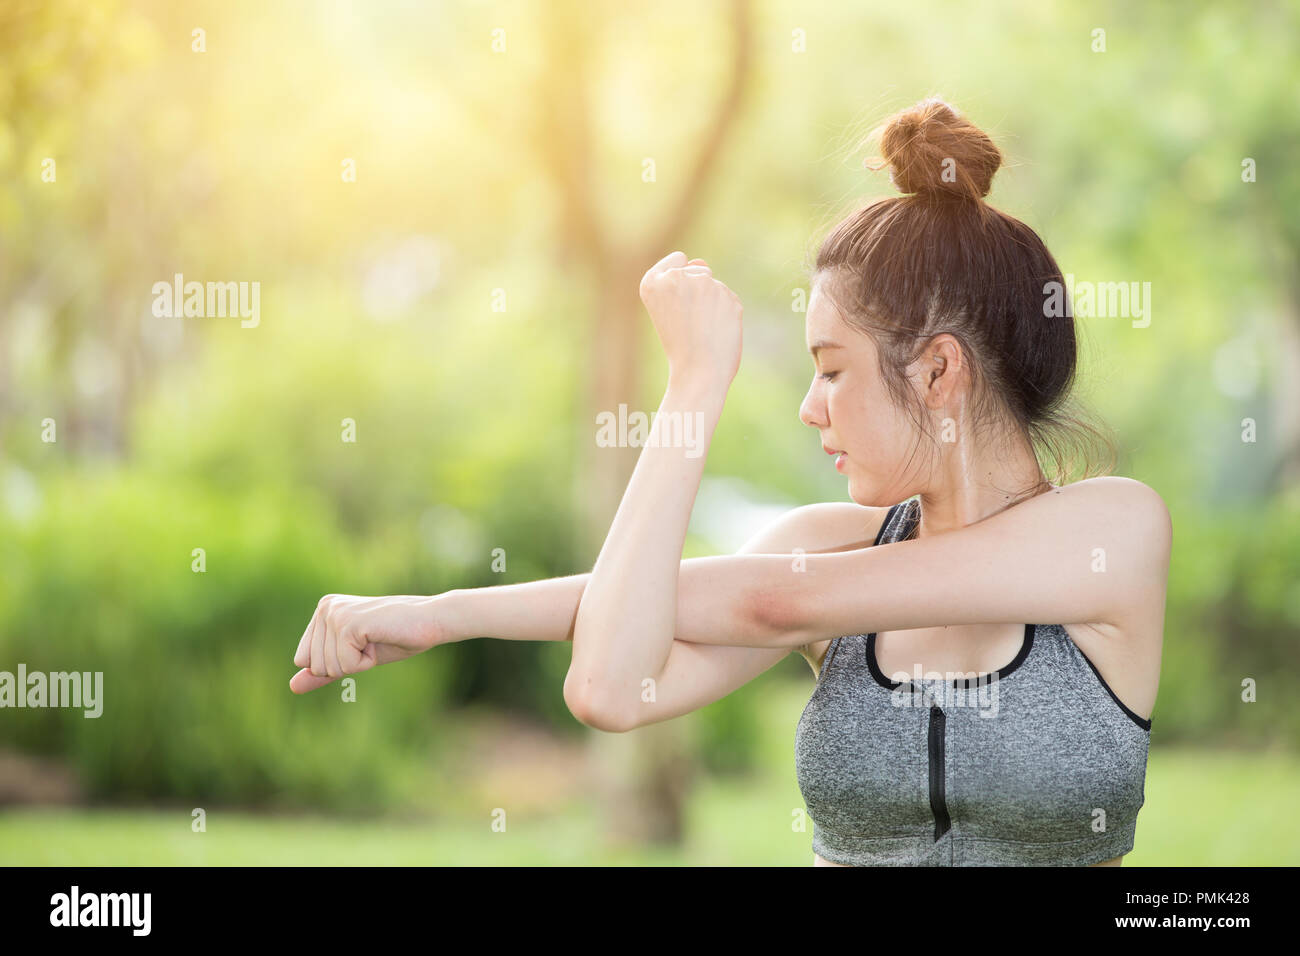 Lindo adolescente estirando el brazo hermosa niña en el parque el ejercicio al aire libre Foto de stock